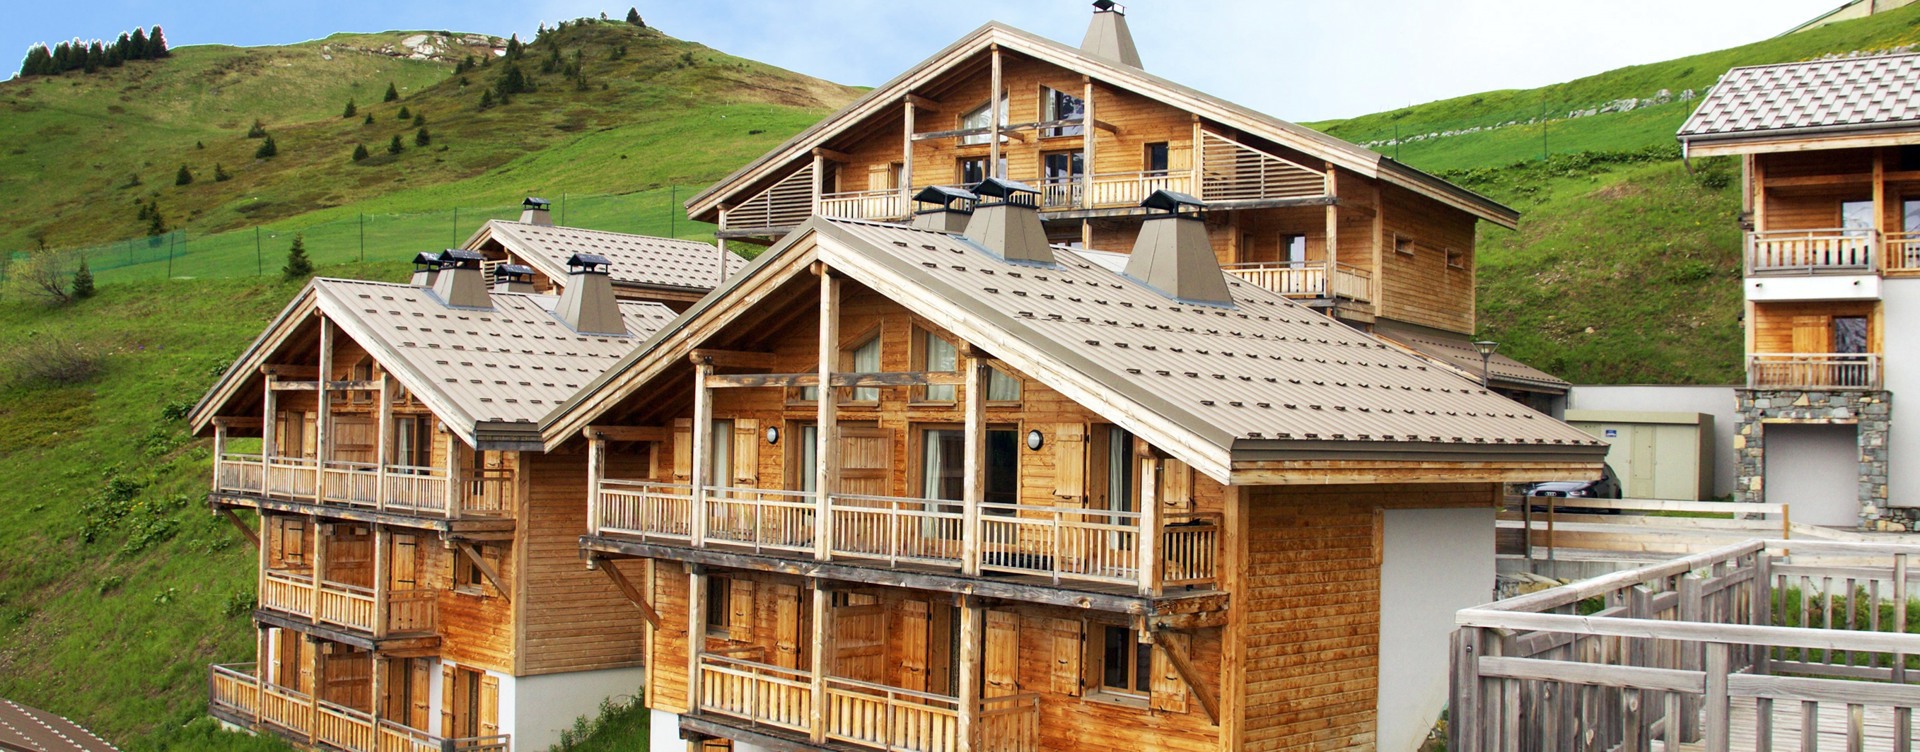 Descubre nuestro acogedor resort en Flaine,
situado en los Alpes franceses